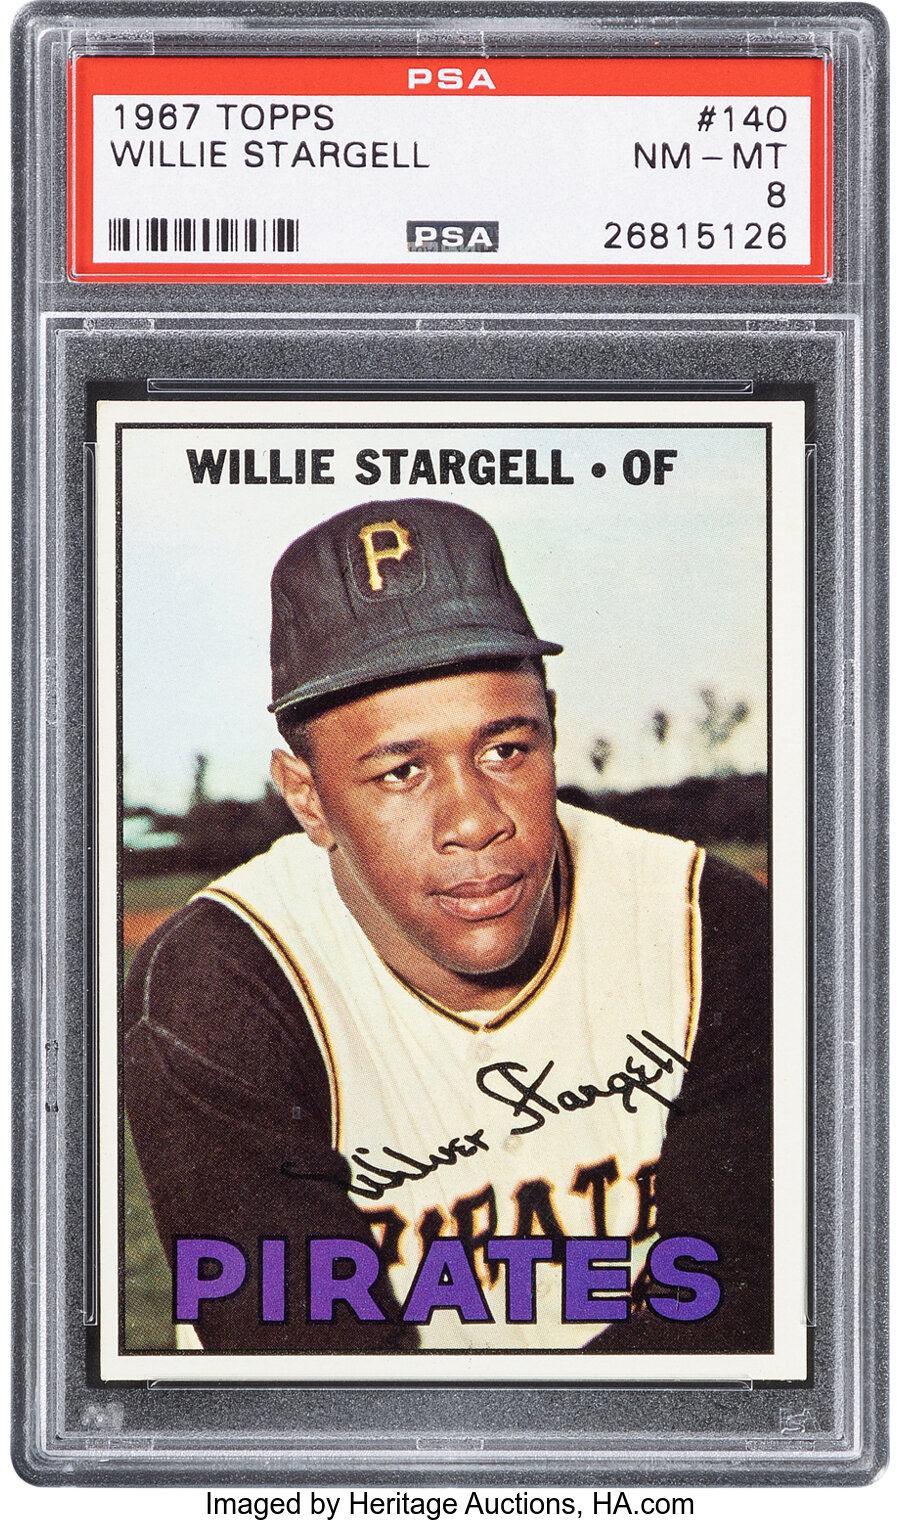 1967 Topps Willie Stargell #140 PSA NM-MT 8